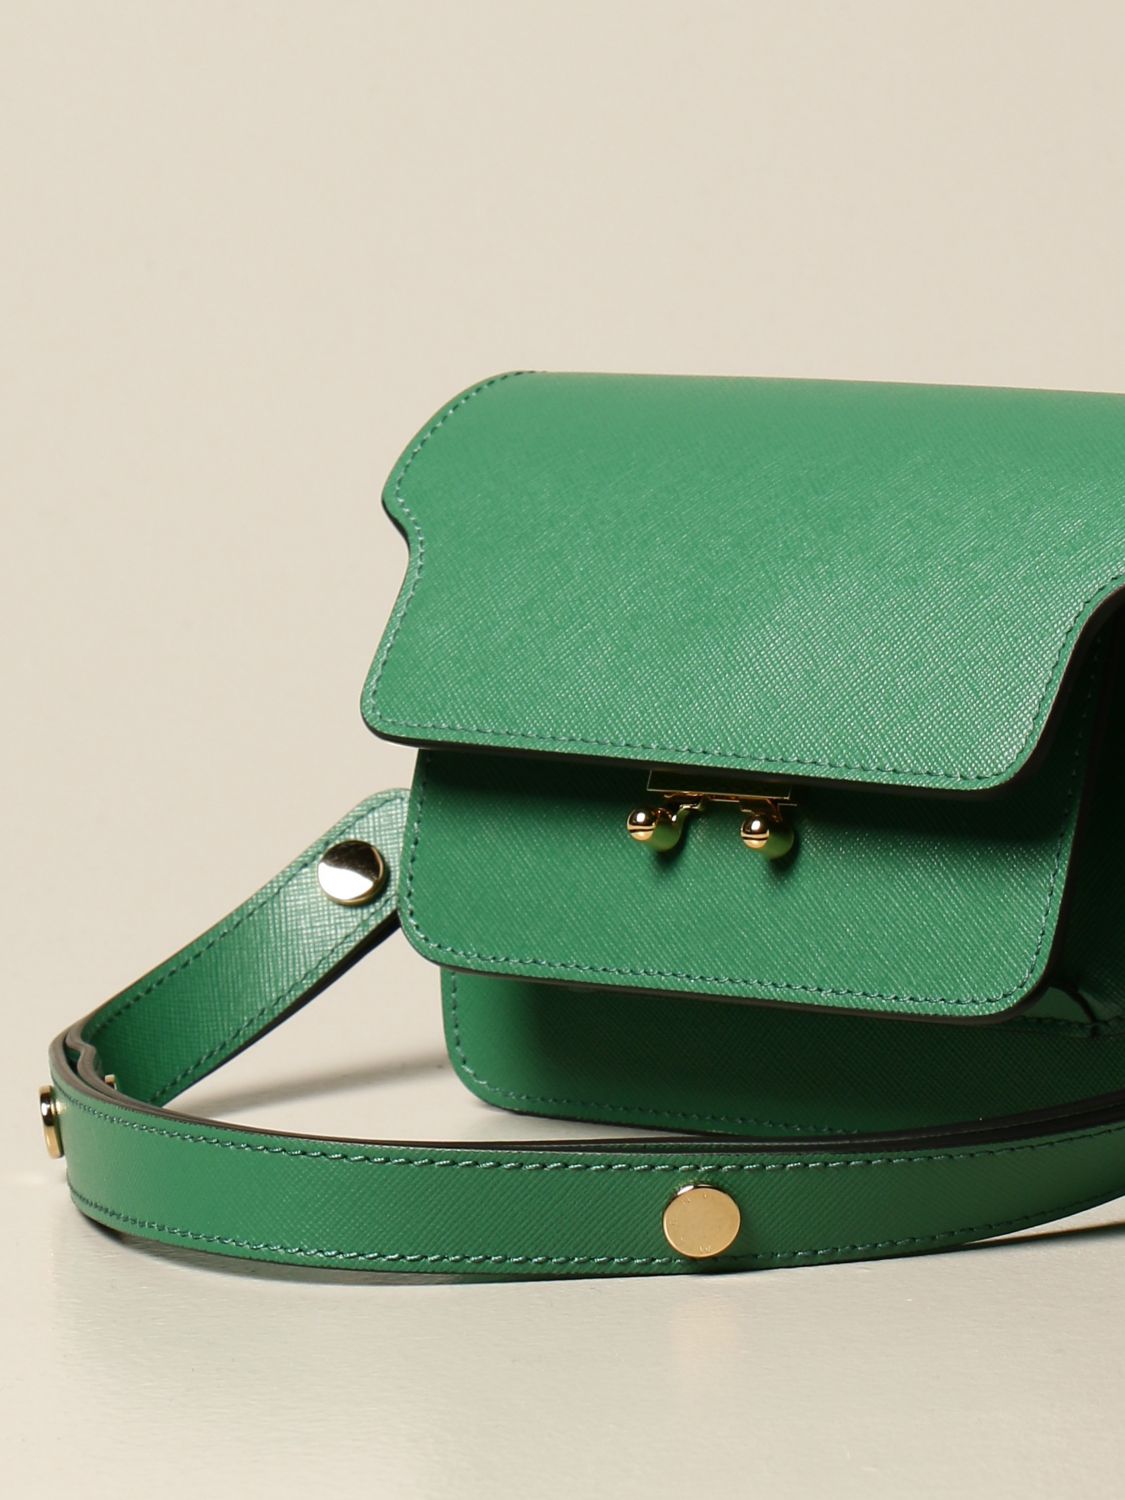 MARNI: Trunk shoulder bag in saffiano leather - Emerald | Marni